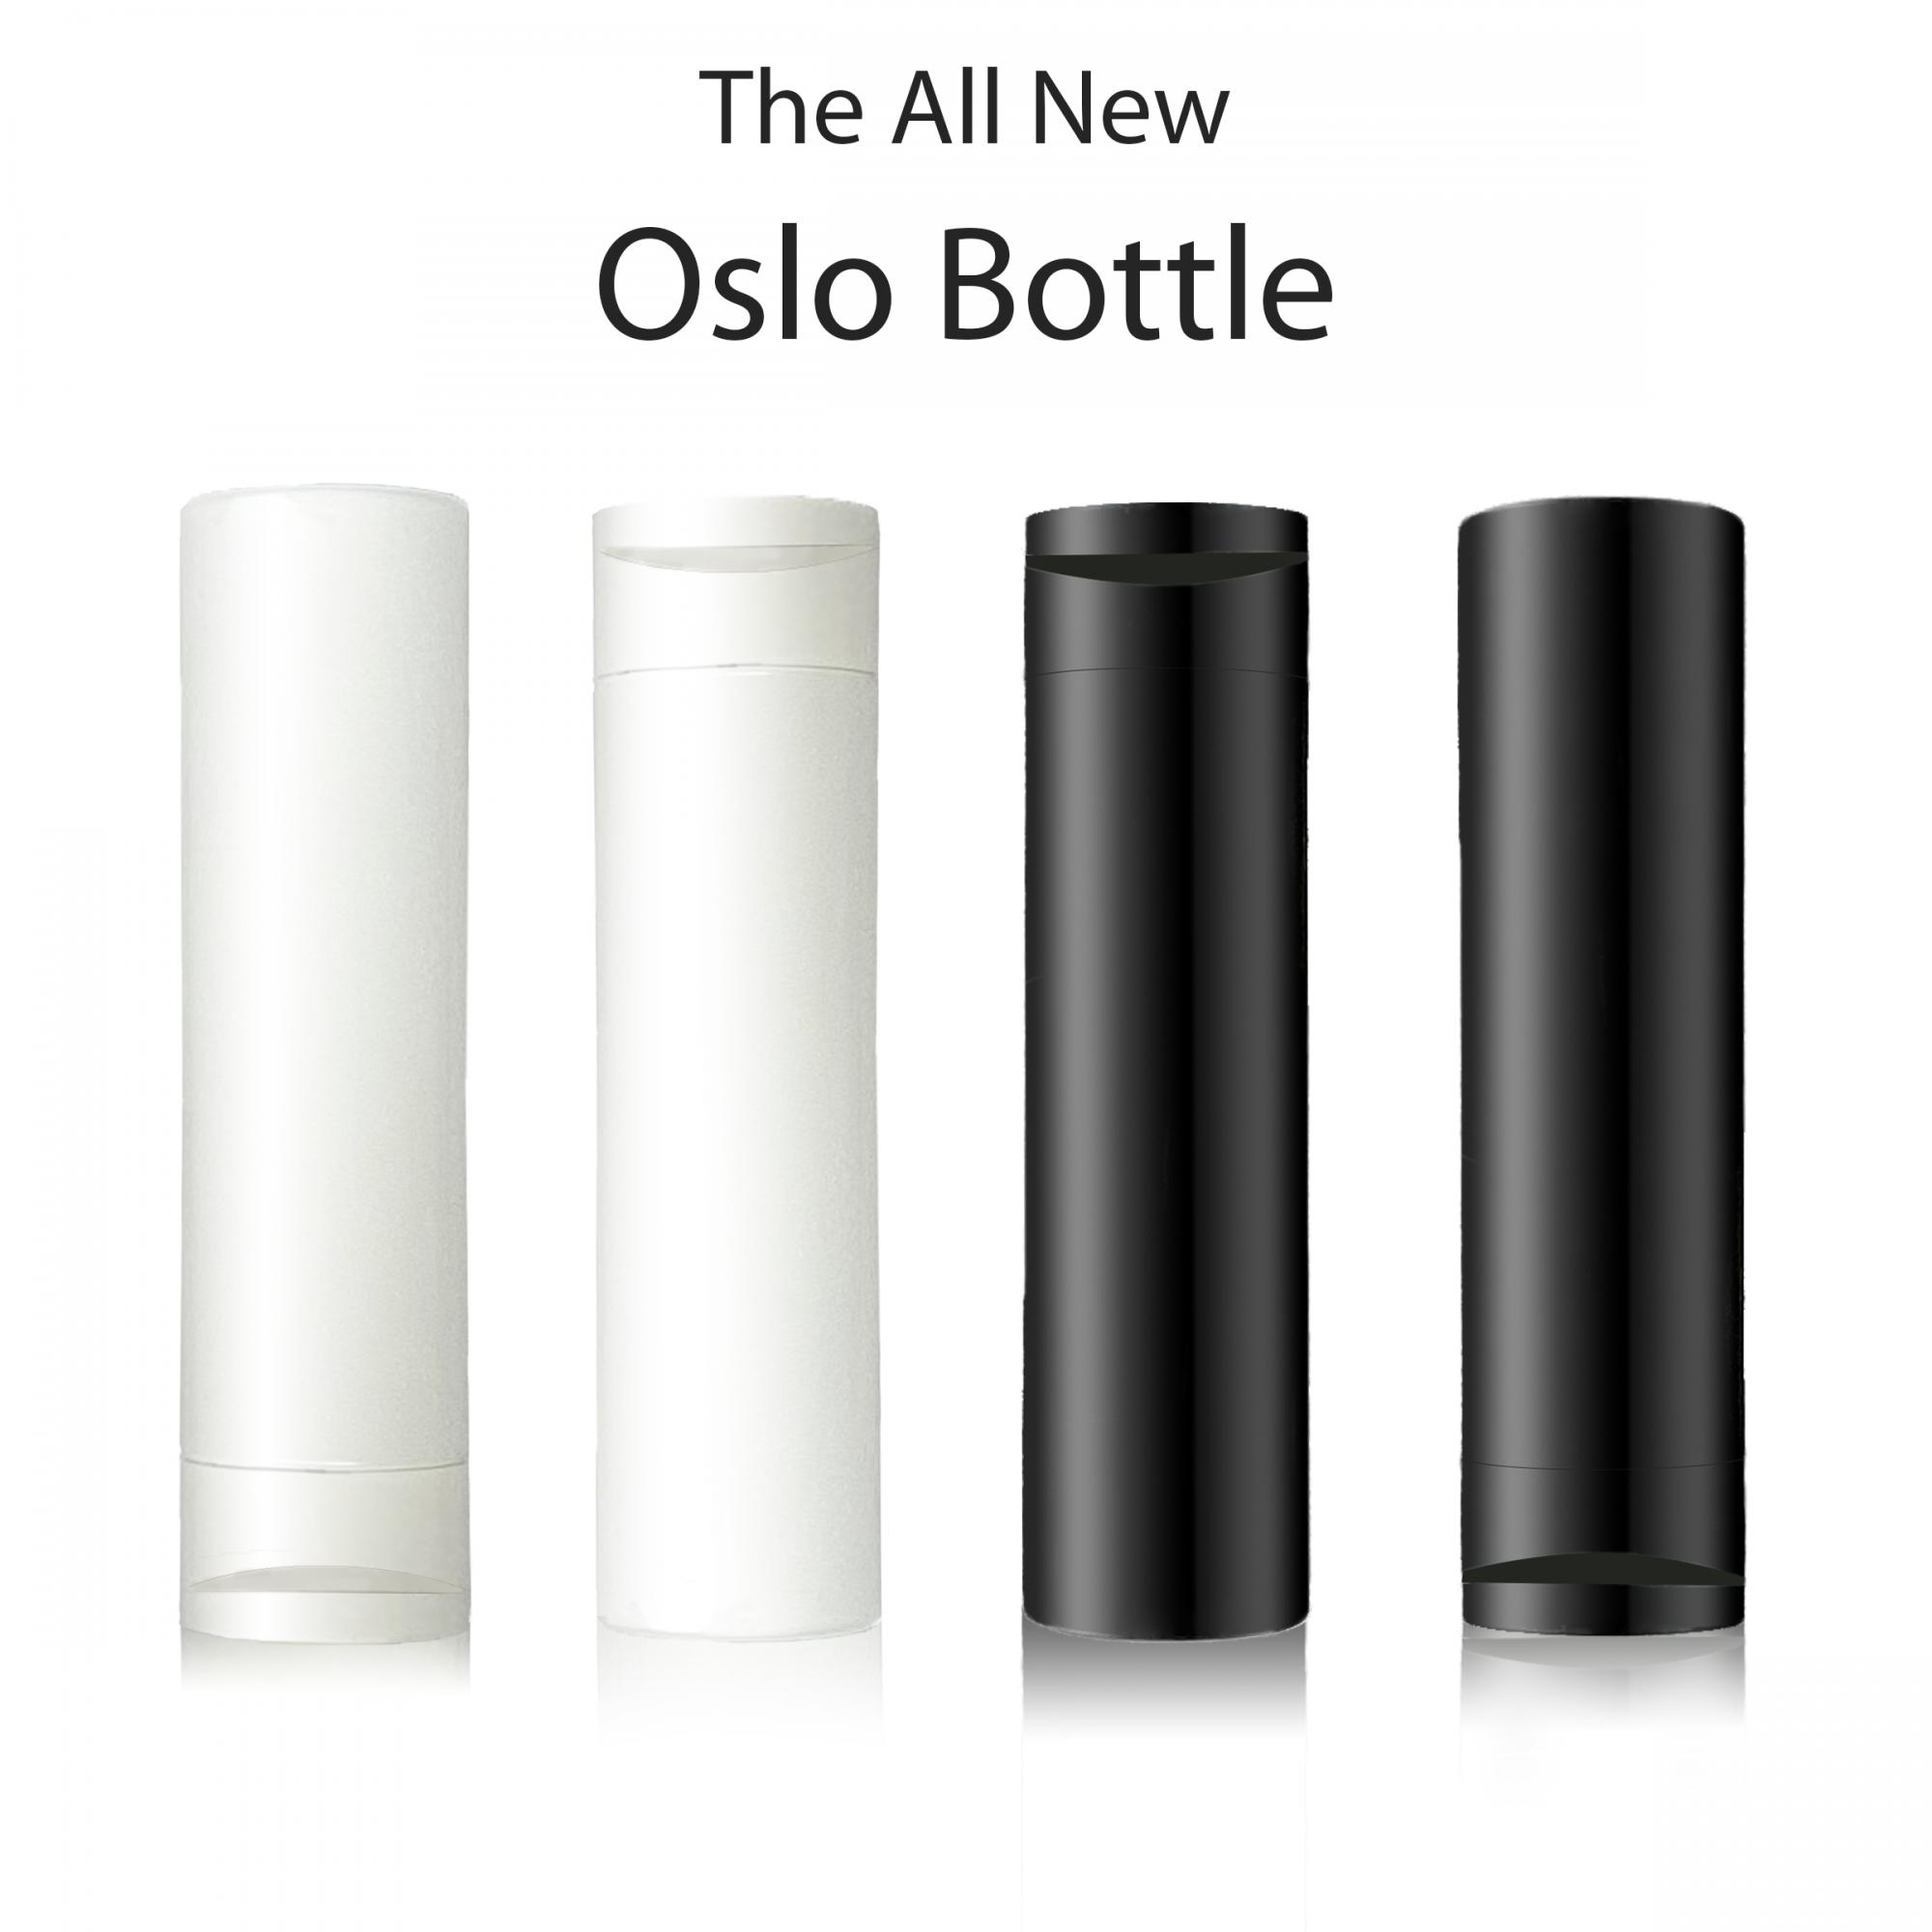 Oslo Bottle